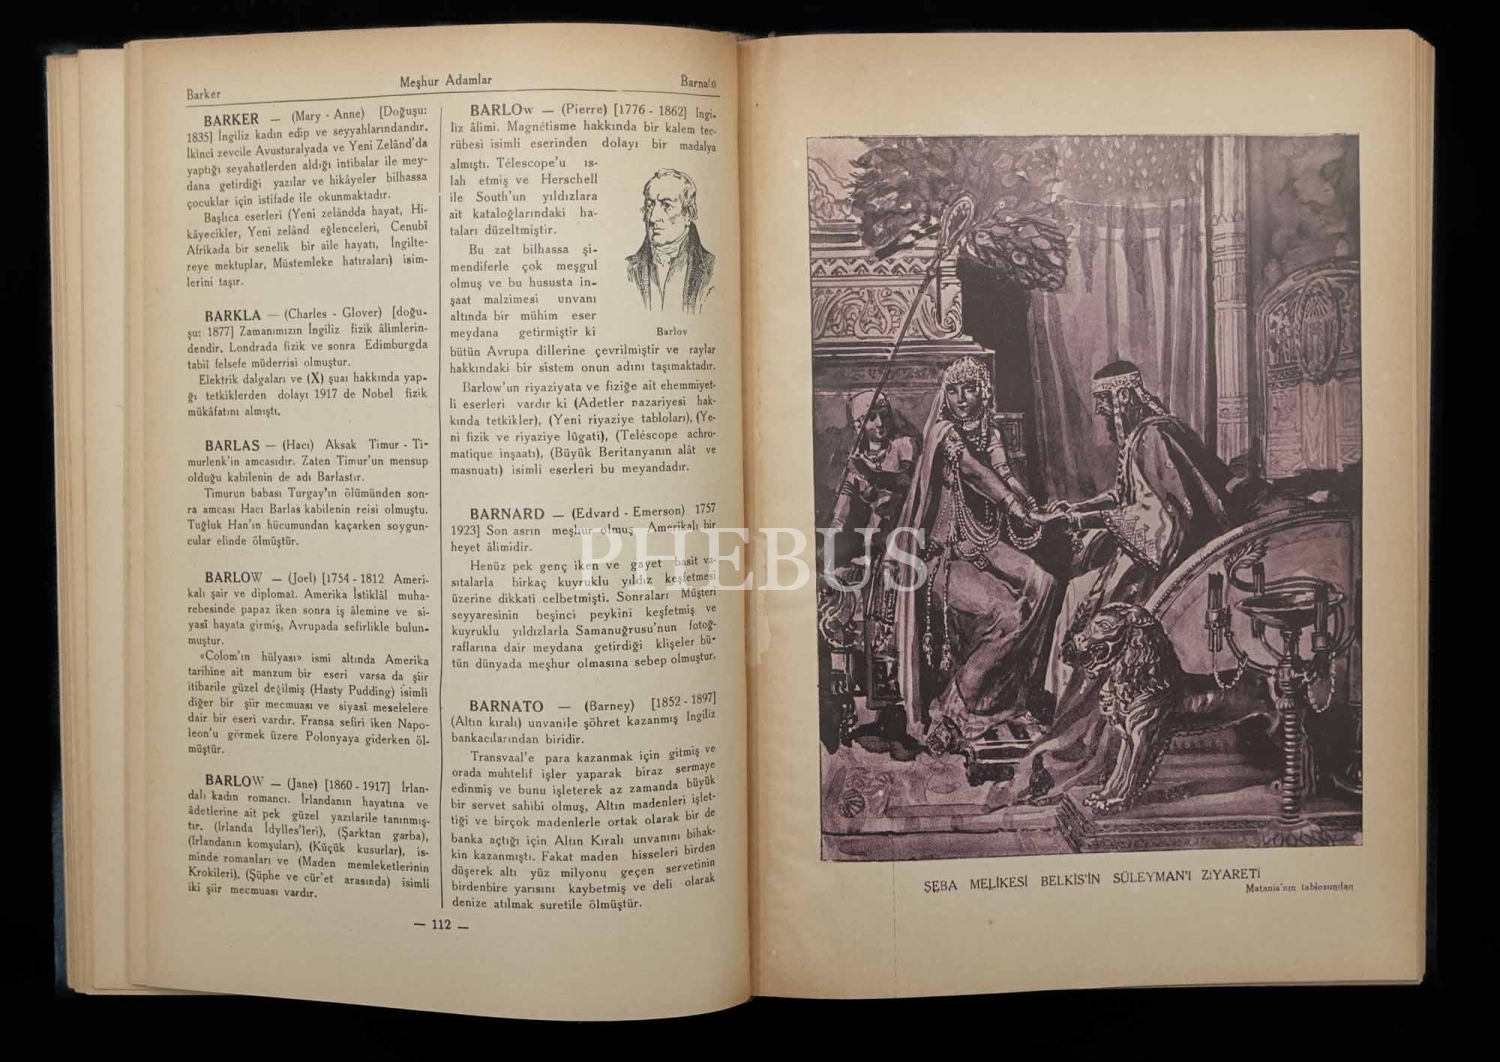 RESİMLİ MEŞHUR ADAMLAR ANSİKLOPEDİSİ (1.2.3. ve 4. Cilt) İbrahim Alâettin, Hazırlayan ve Yayınlayan: Sedat Simavî, 1933-1935, Yenigün Neşriyâtı, 1604 sayfa,21x29 cm...